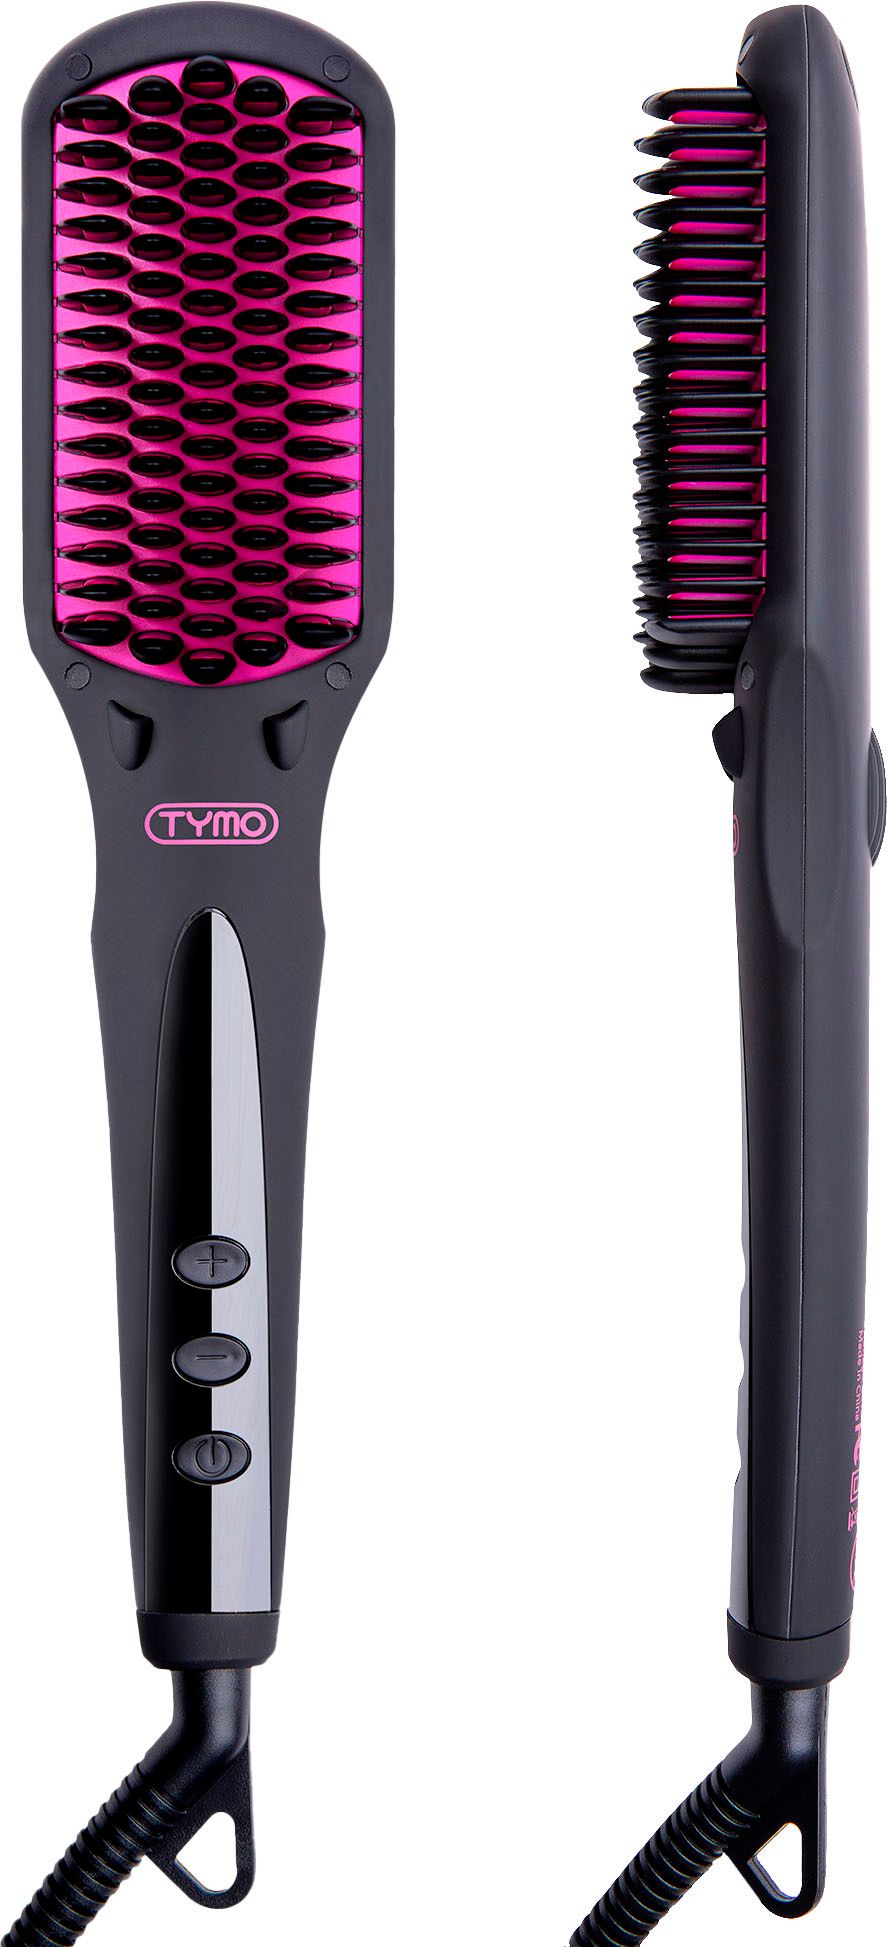 TYMO Ionic Hair Straightening Brush Black HC101S - Best Buy | Best Buy U.S.